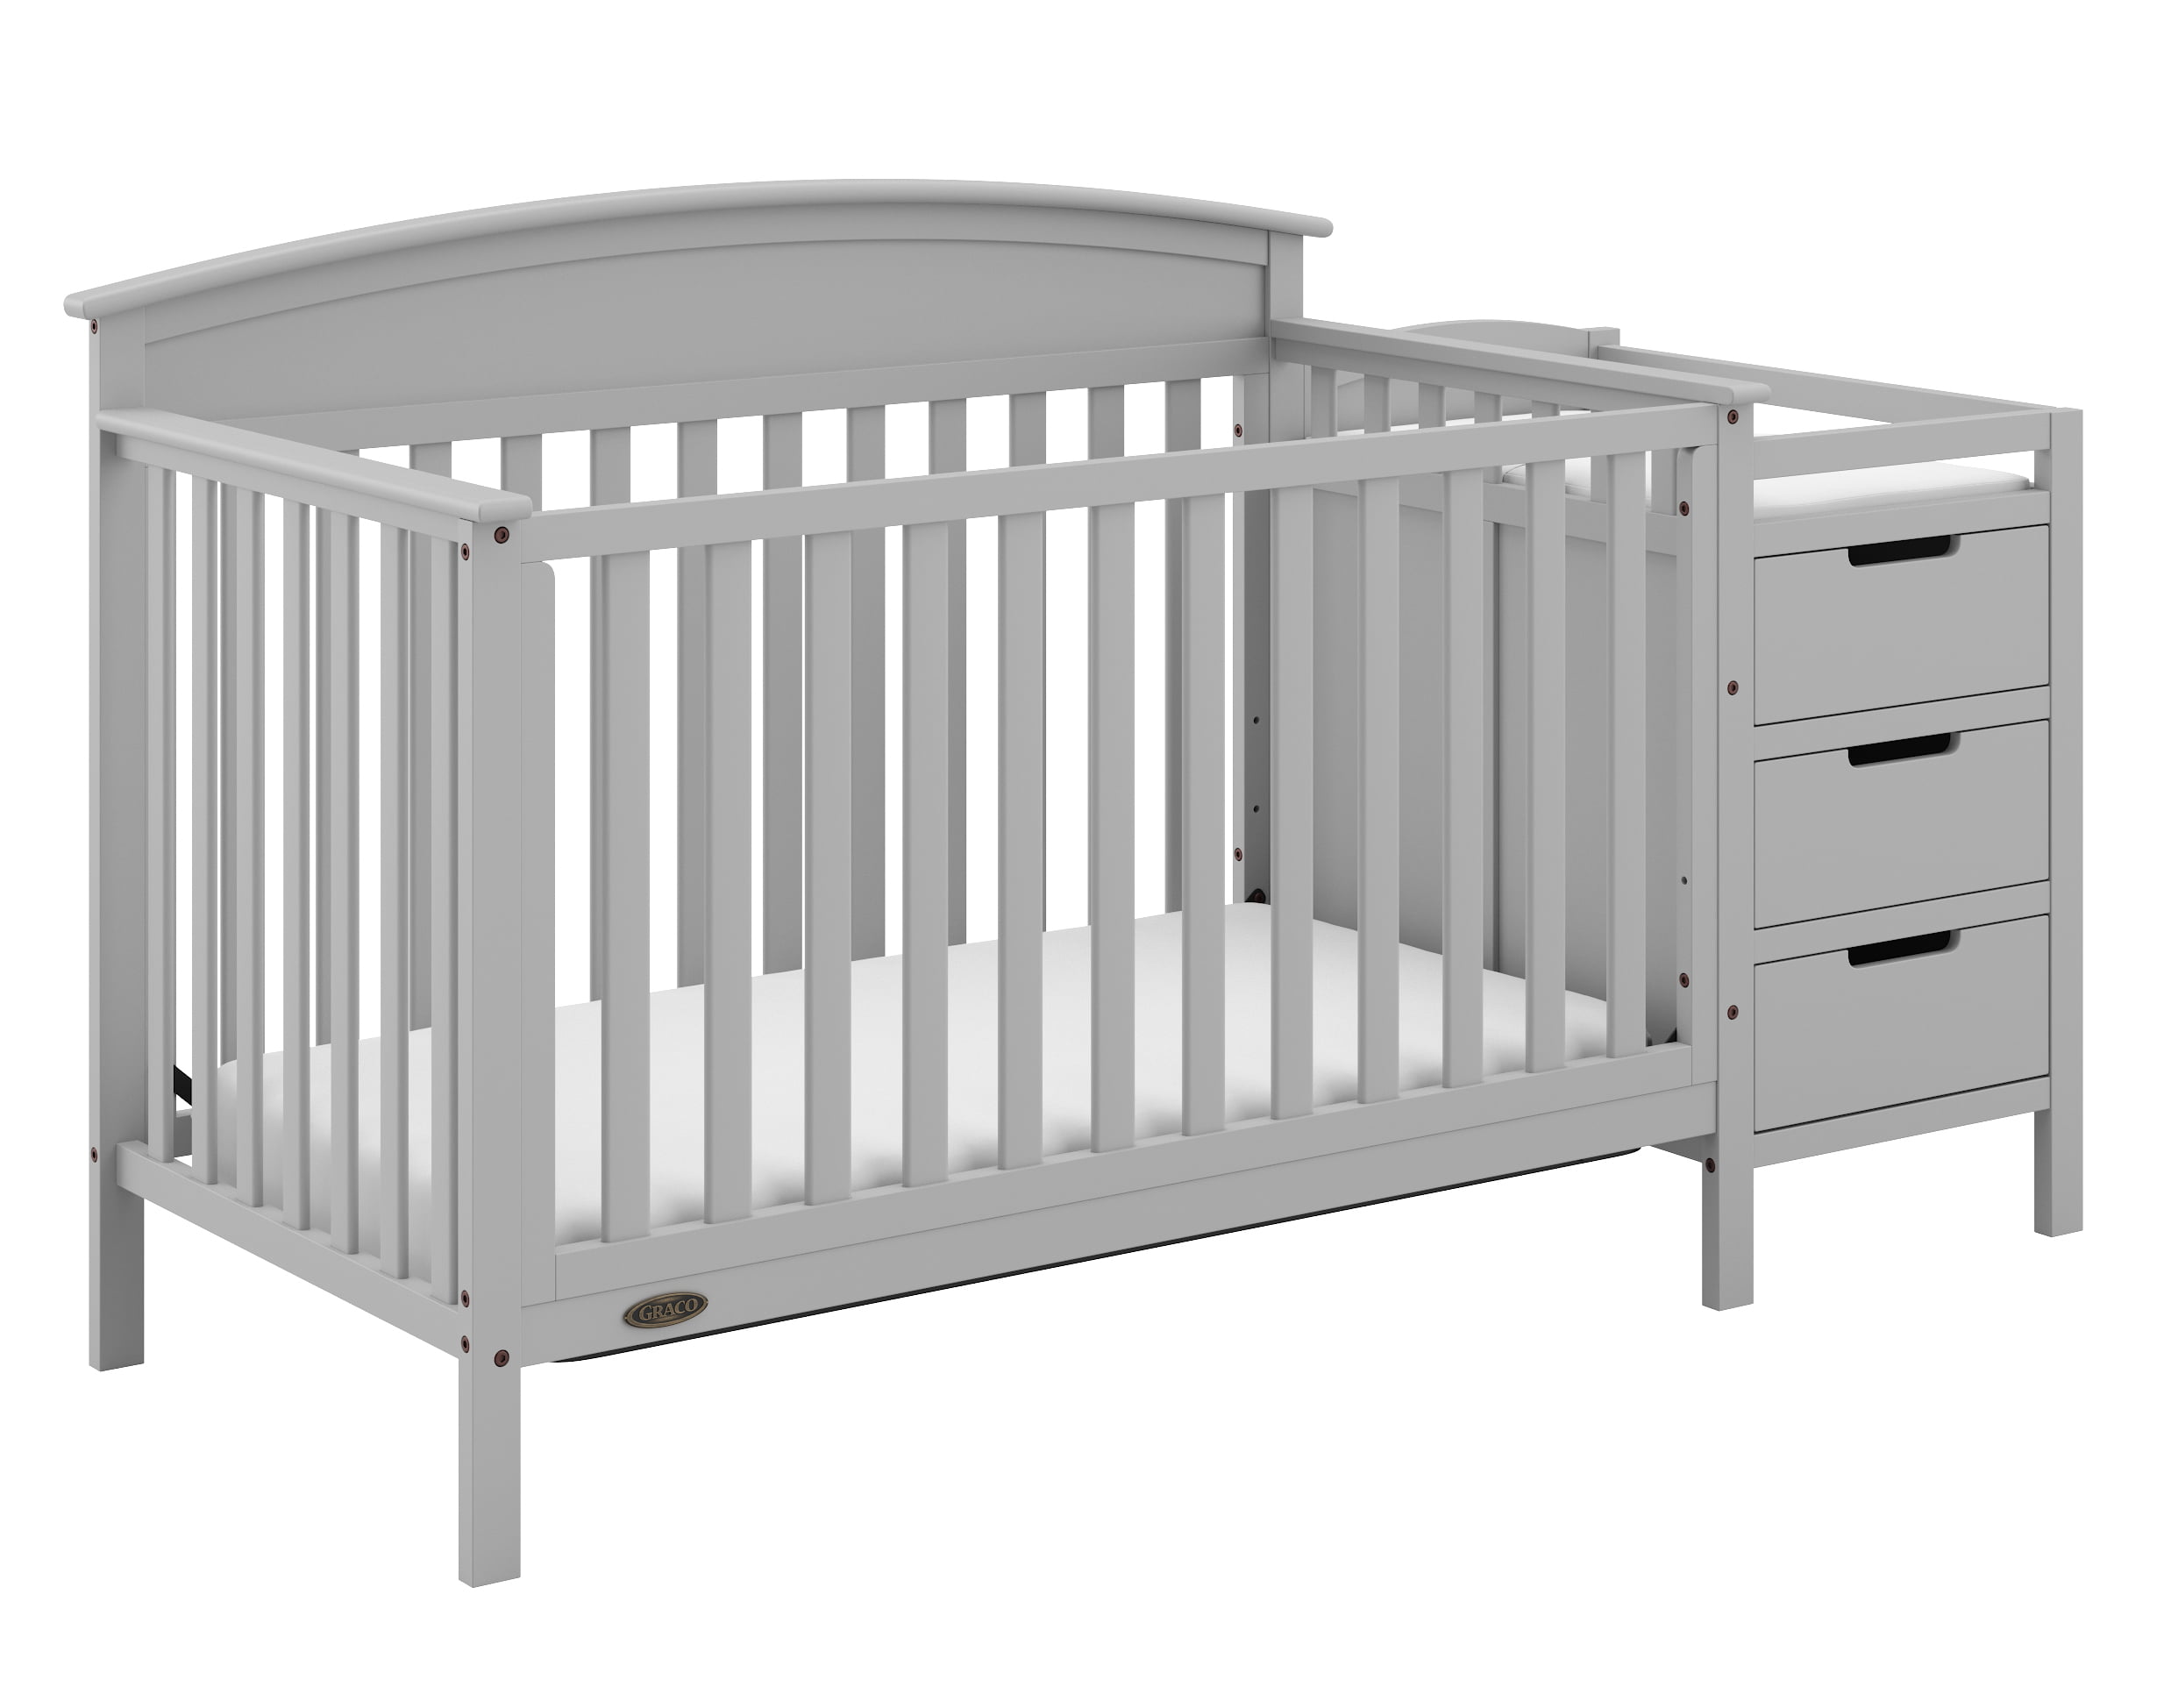 Graco Benton 4-in-1 Convertible Crib and Changer, Pebble Gray